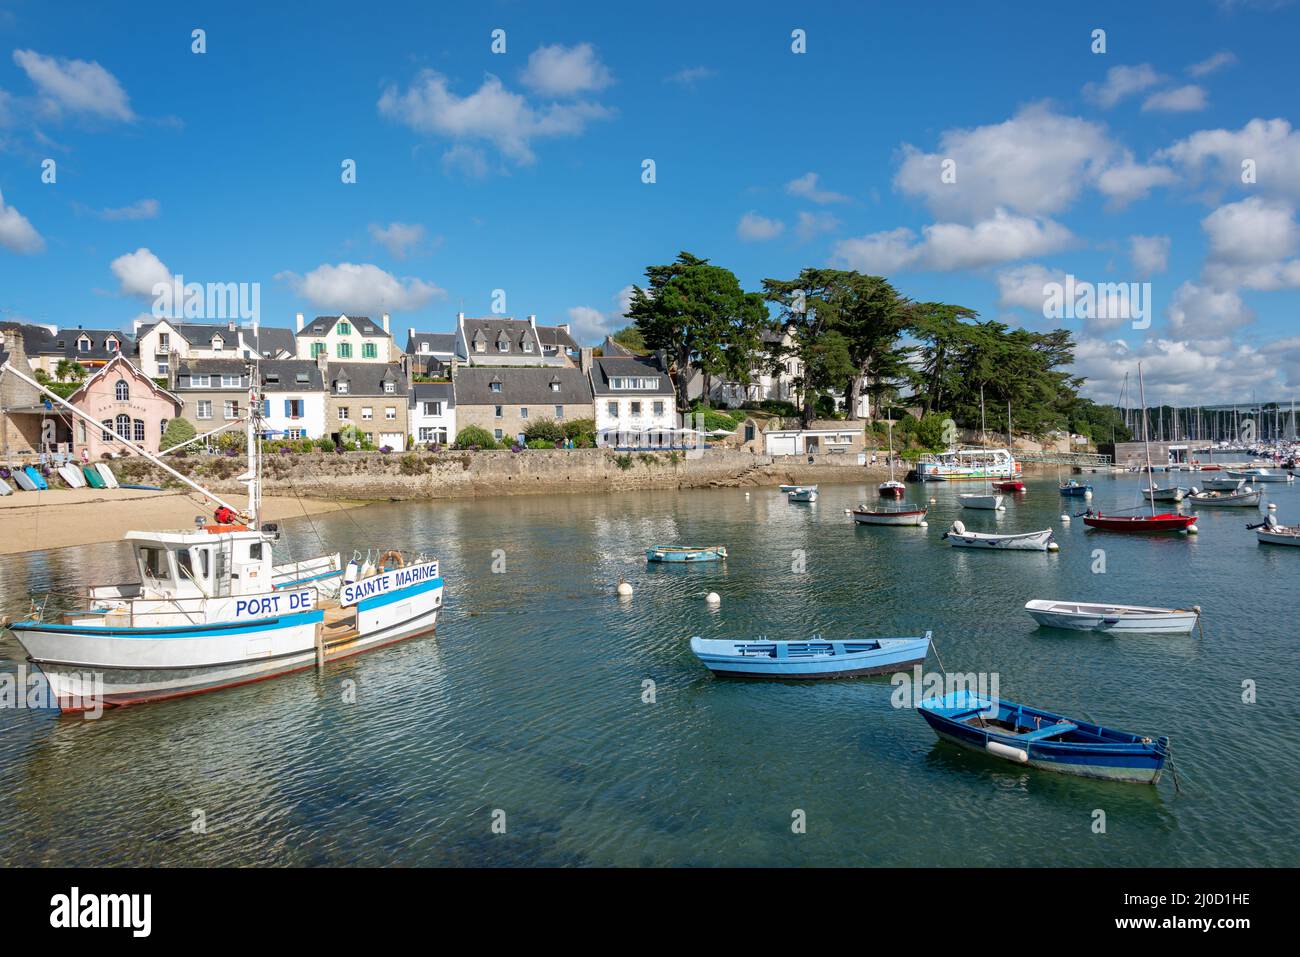 Vue sur le pittoresque port de Sainte Marine dans le Finistère, Bretagne, France Banque D'Images